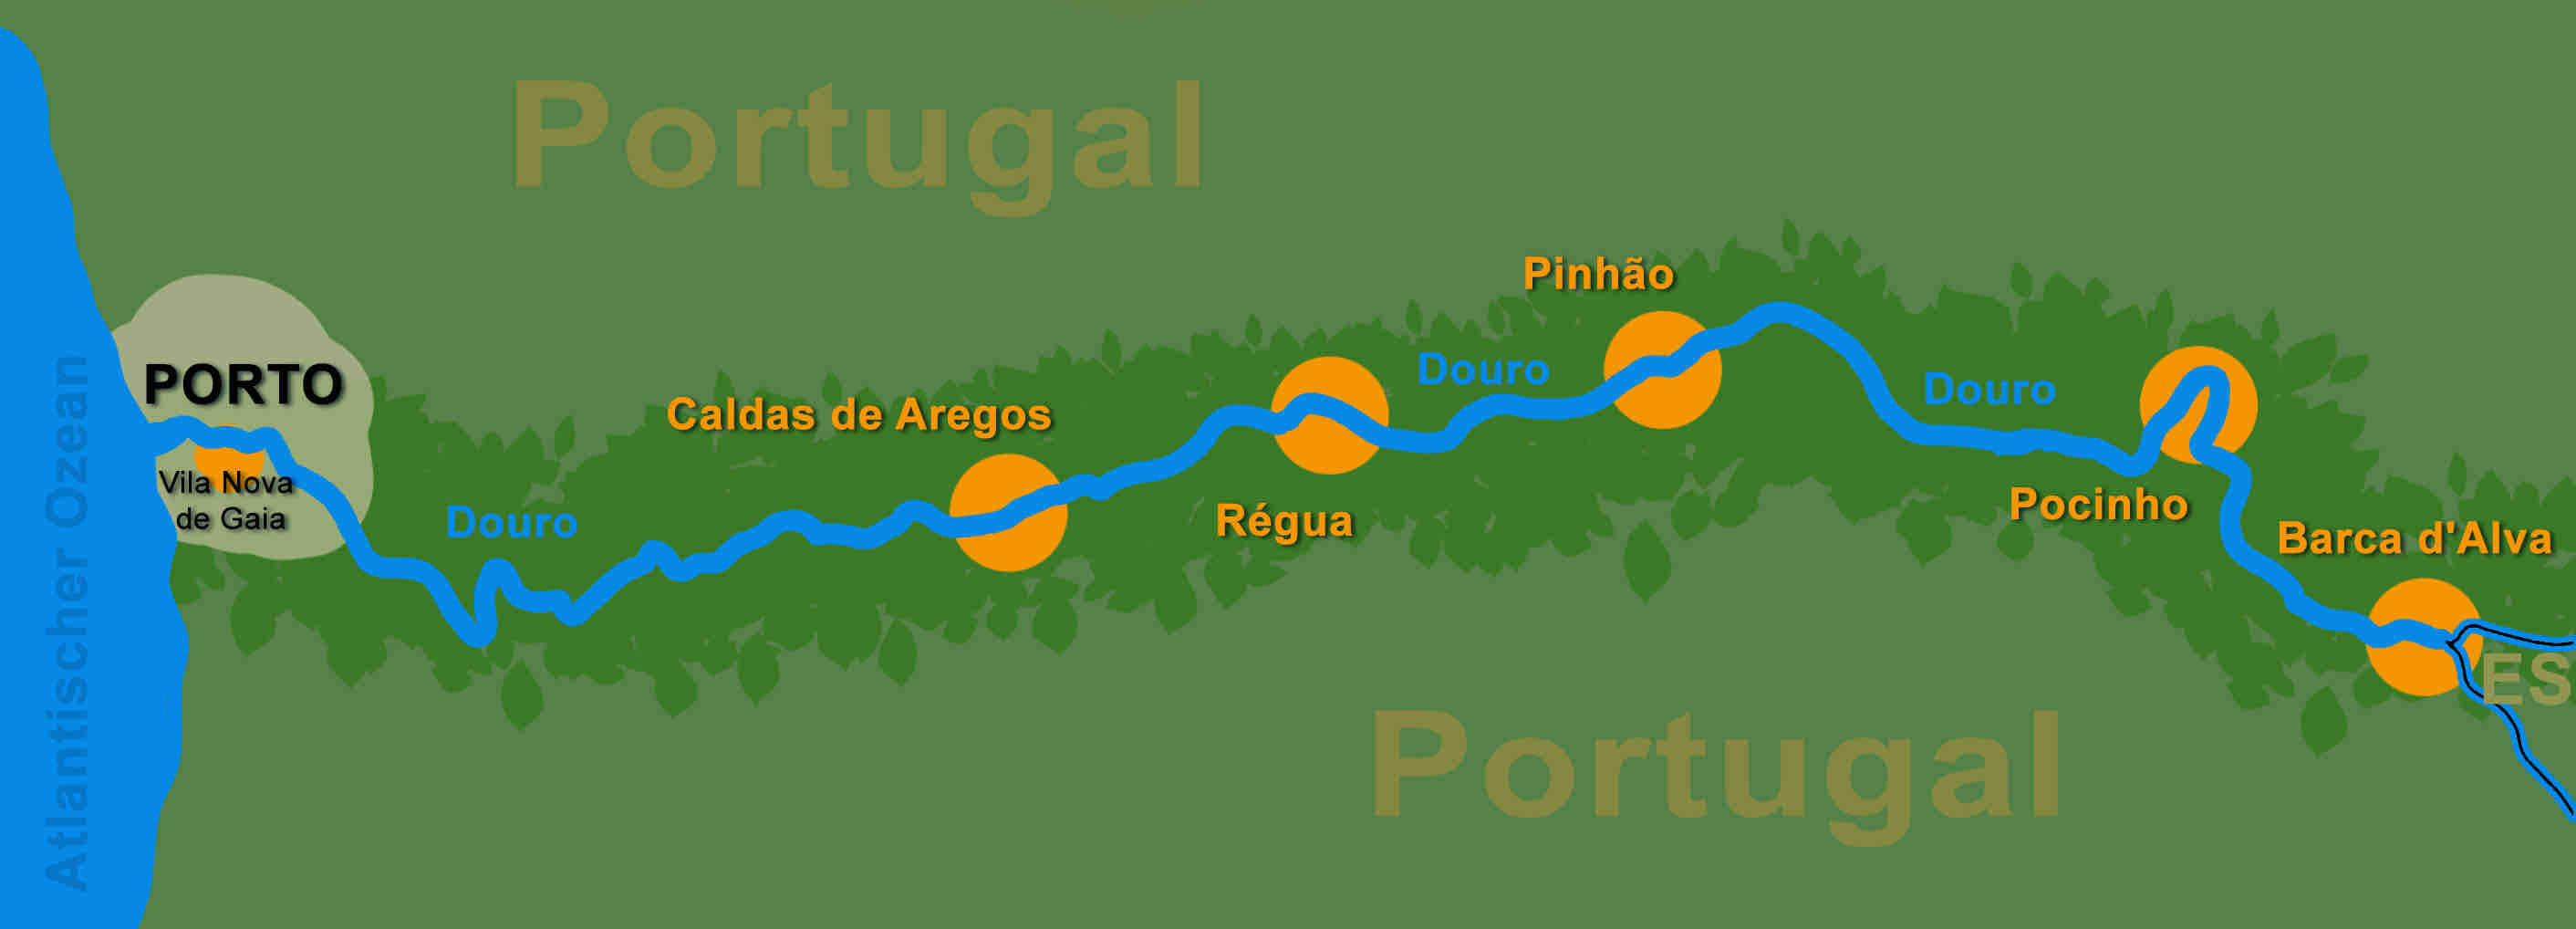 Die Douro